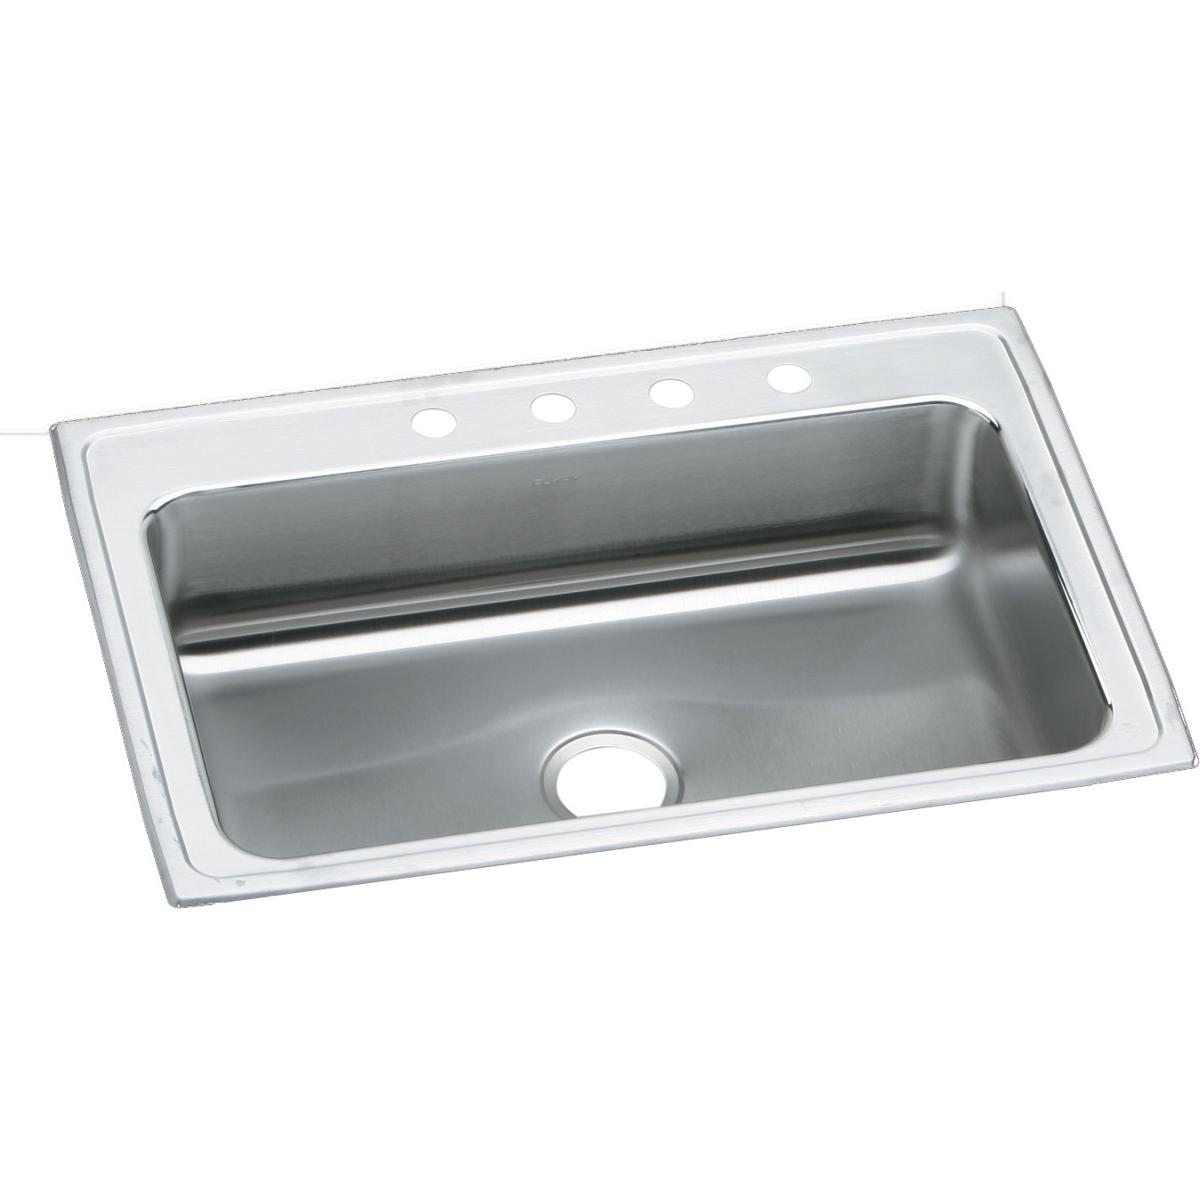 Elkay Lustertone Classic 33" x 22" x 7-5/8" Stainless Steel Single Bowl Drop-in Sink